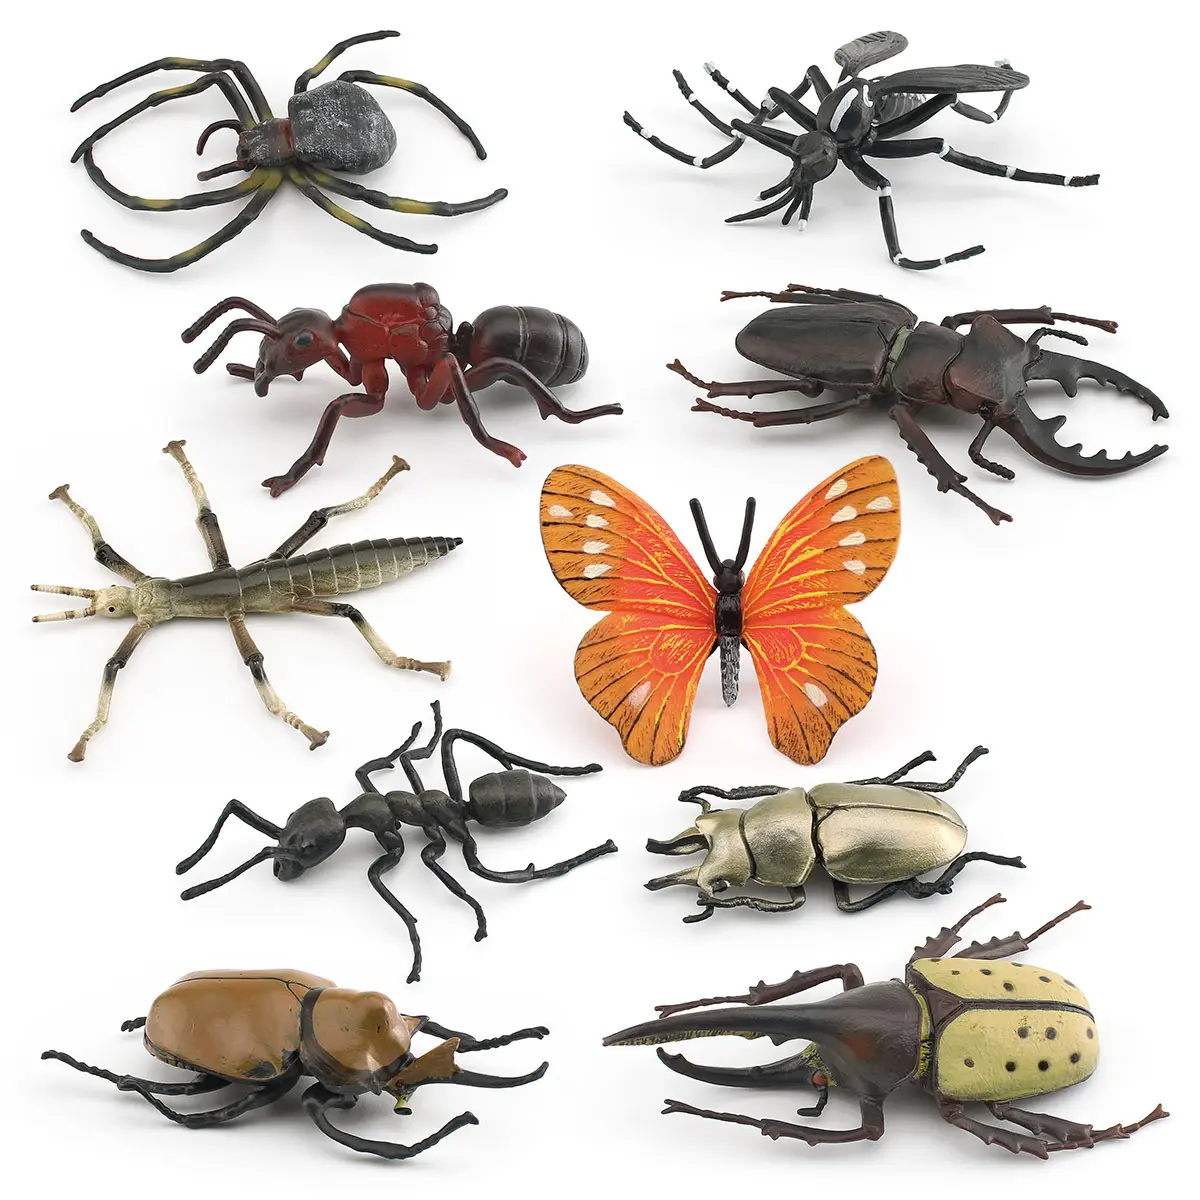 simulierung der catalpa insekt magnopus stiftmauer spinne stechmücken tier modell dekoration